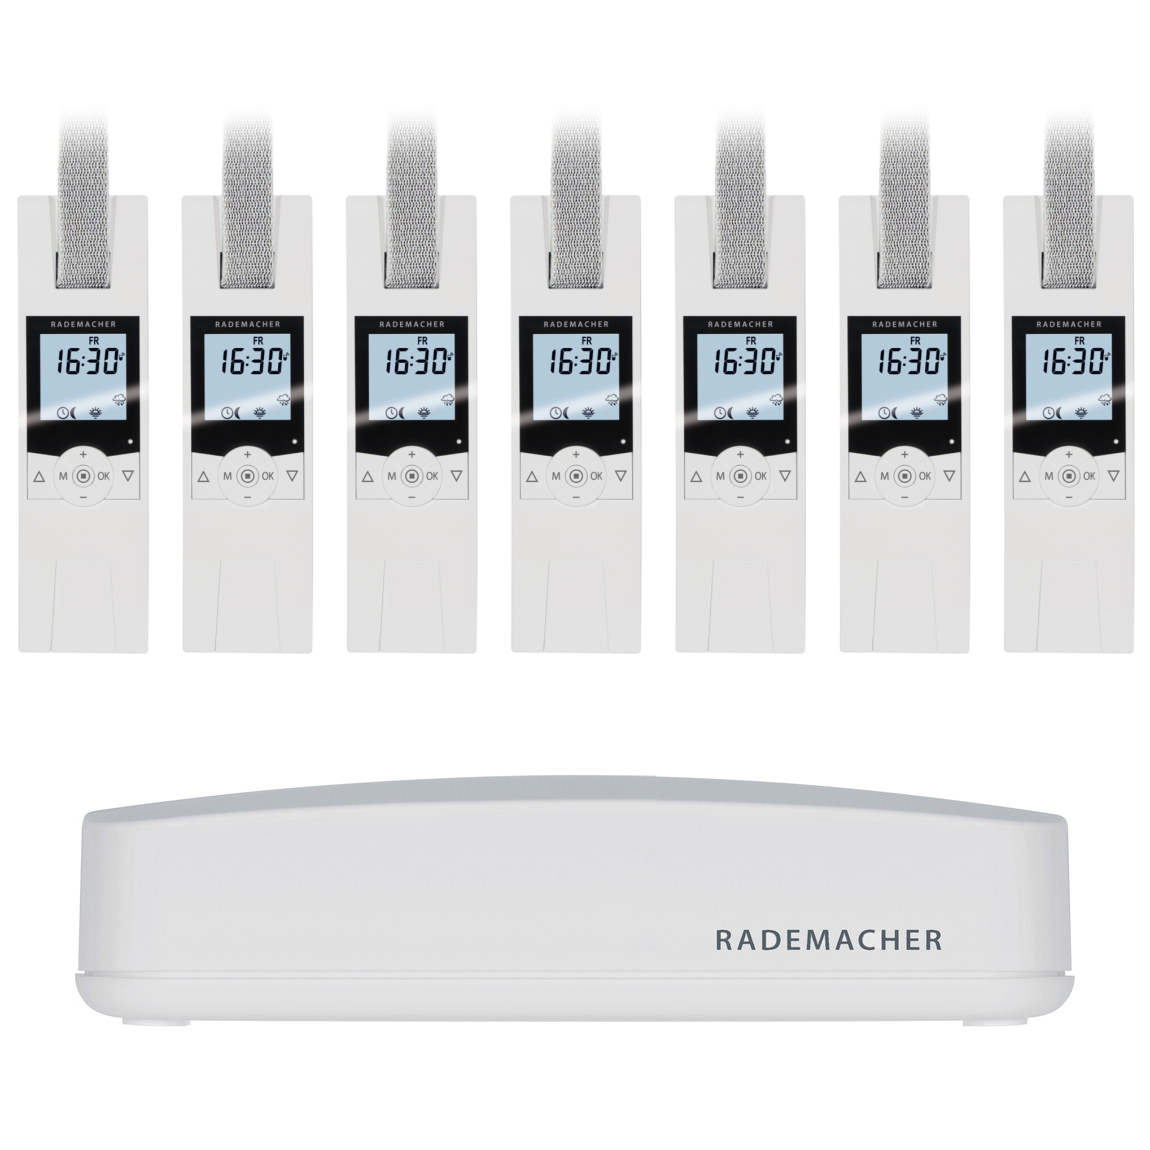 Rademacher HomePilot + RolloTron Comfort DuoFern 7er-Set – Deal, Schnäppchen, sparen